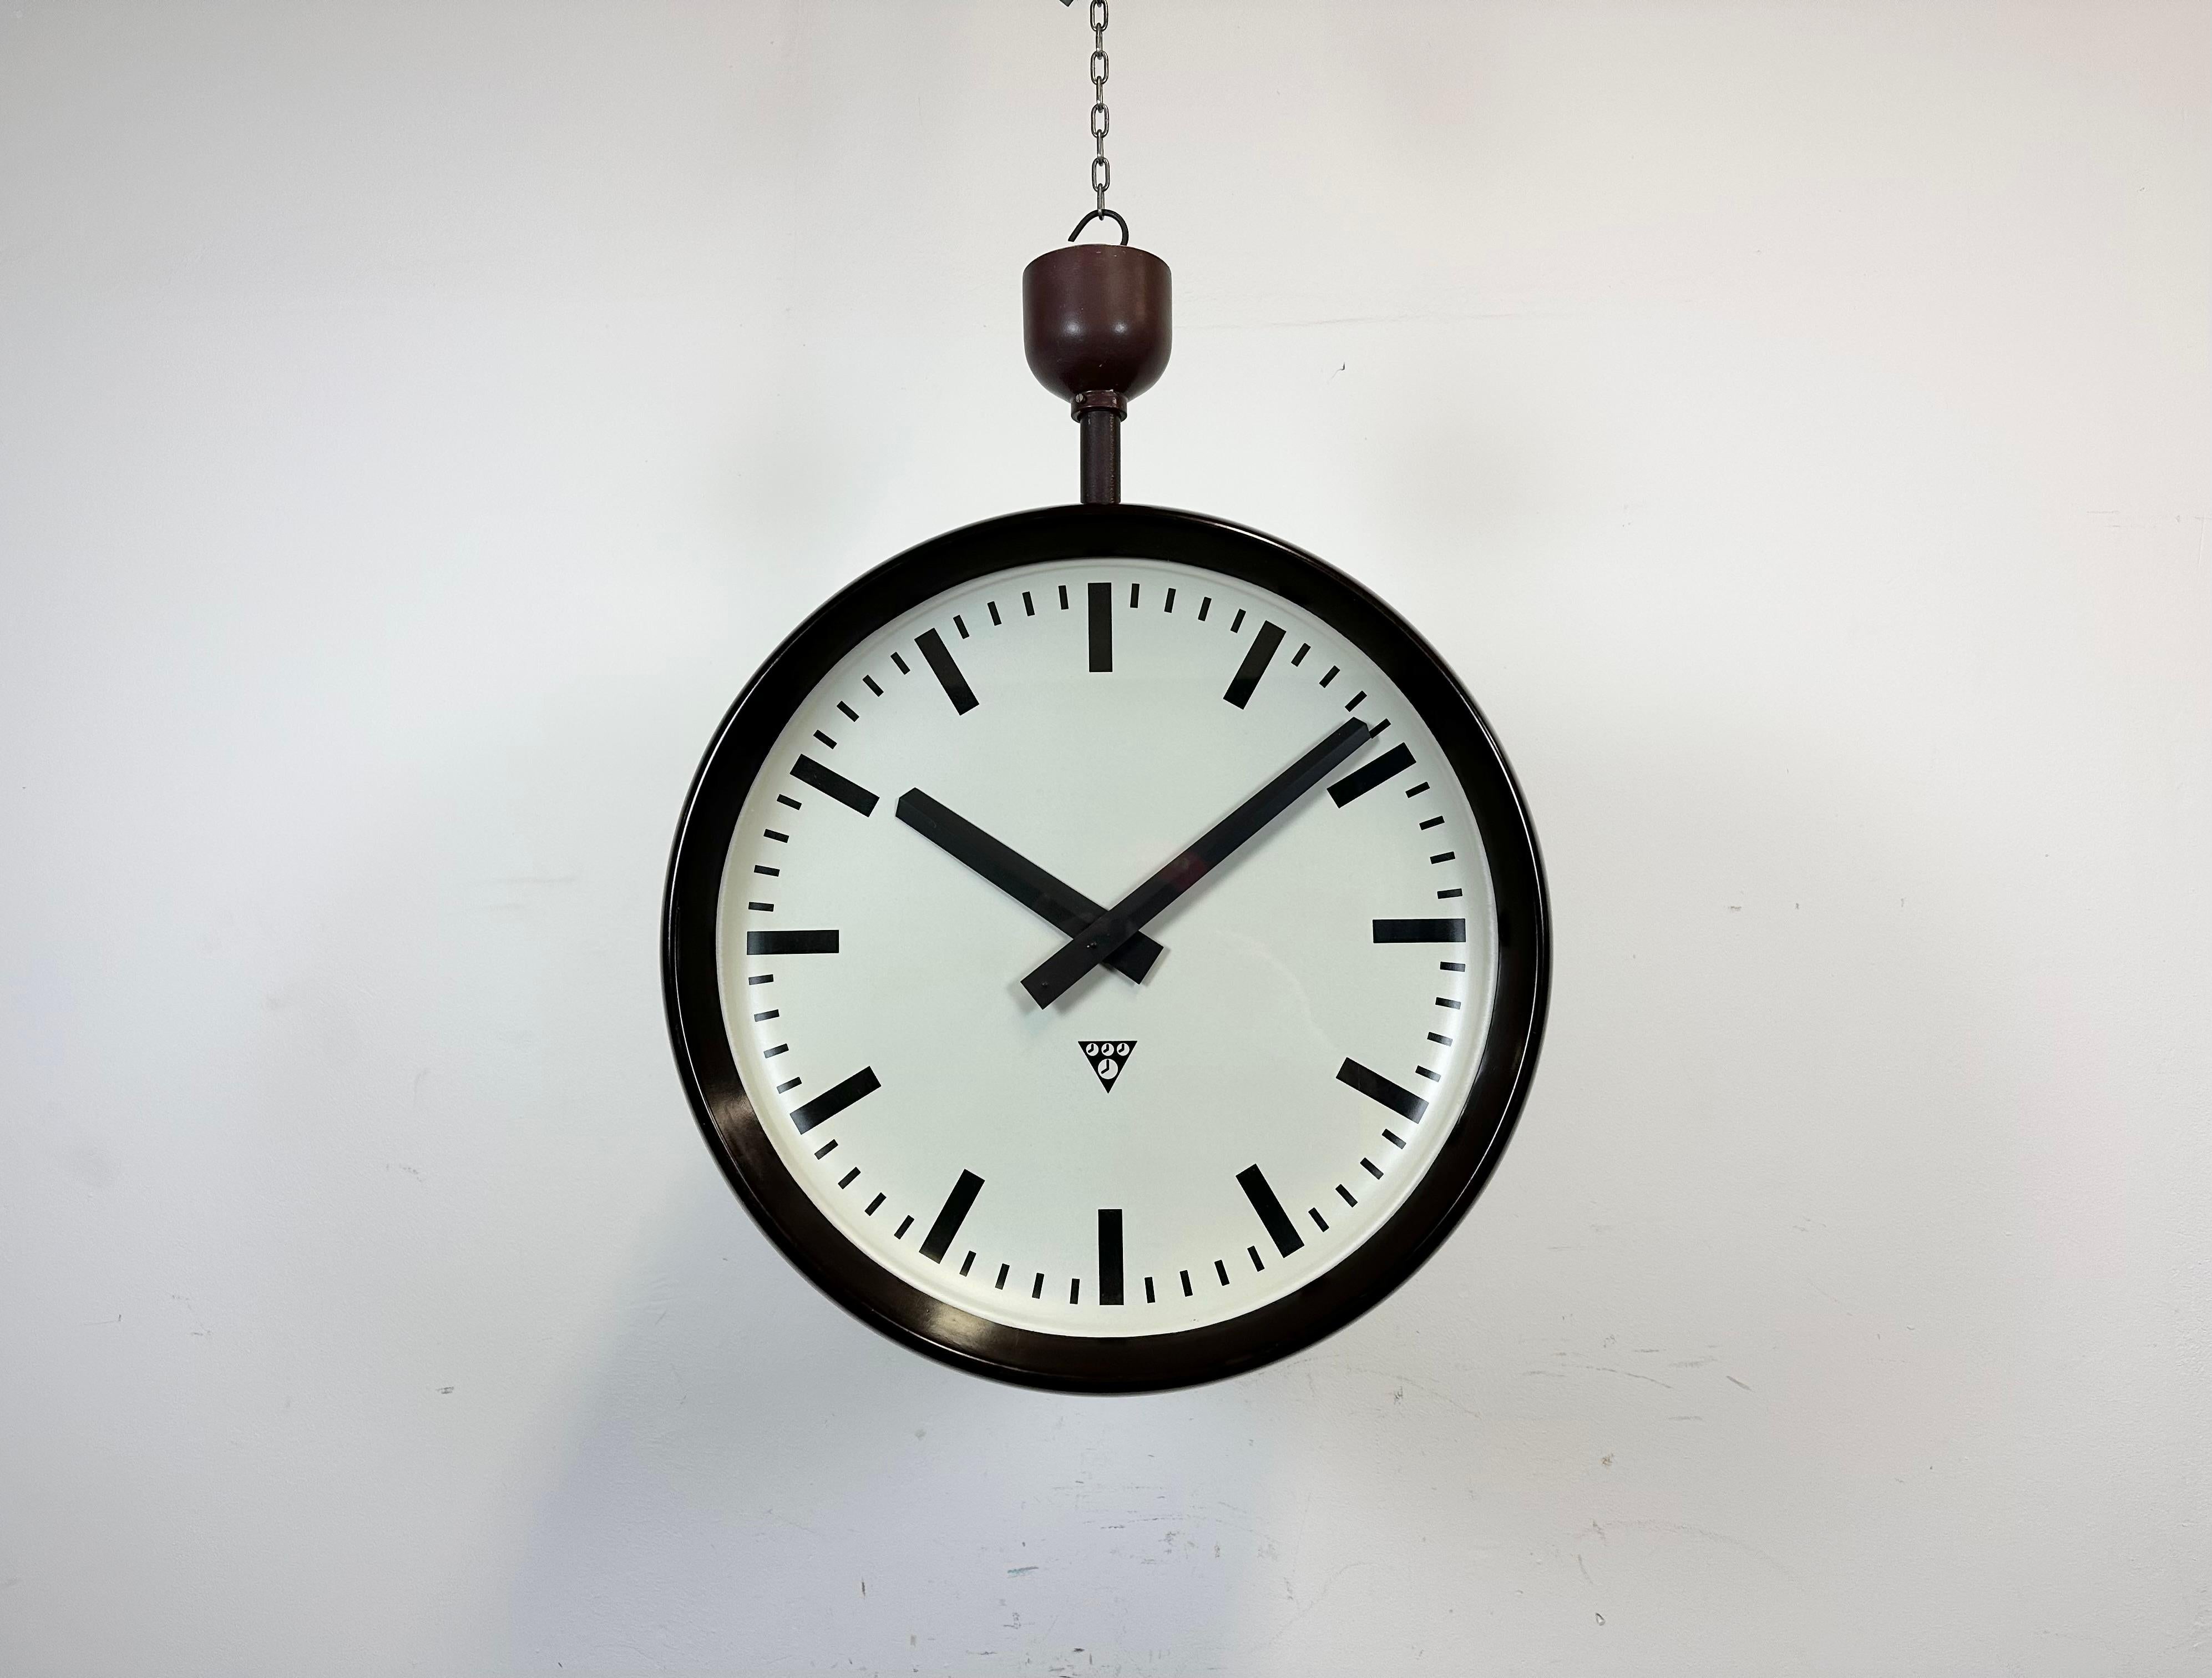 Cette grande horloge d'usine à double face a été produite par Pragotron, dans l'ancienne Tchécoslovaquie, au cours des années 1950. La pièce comprend une horloge en bakélite de deux couleurs brunes avec un couvercle en verre et une structure en fer.